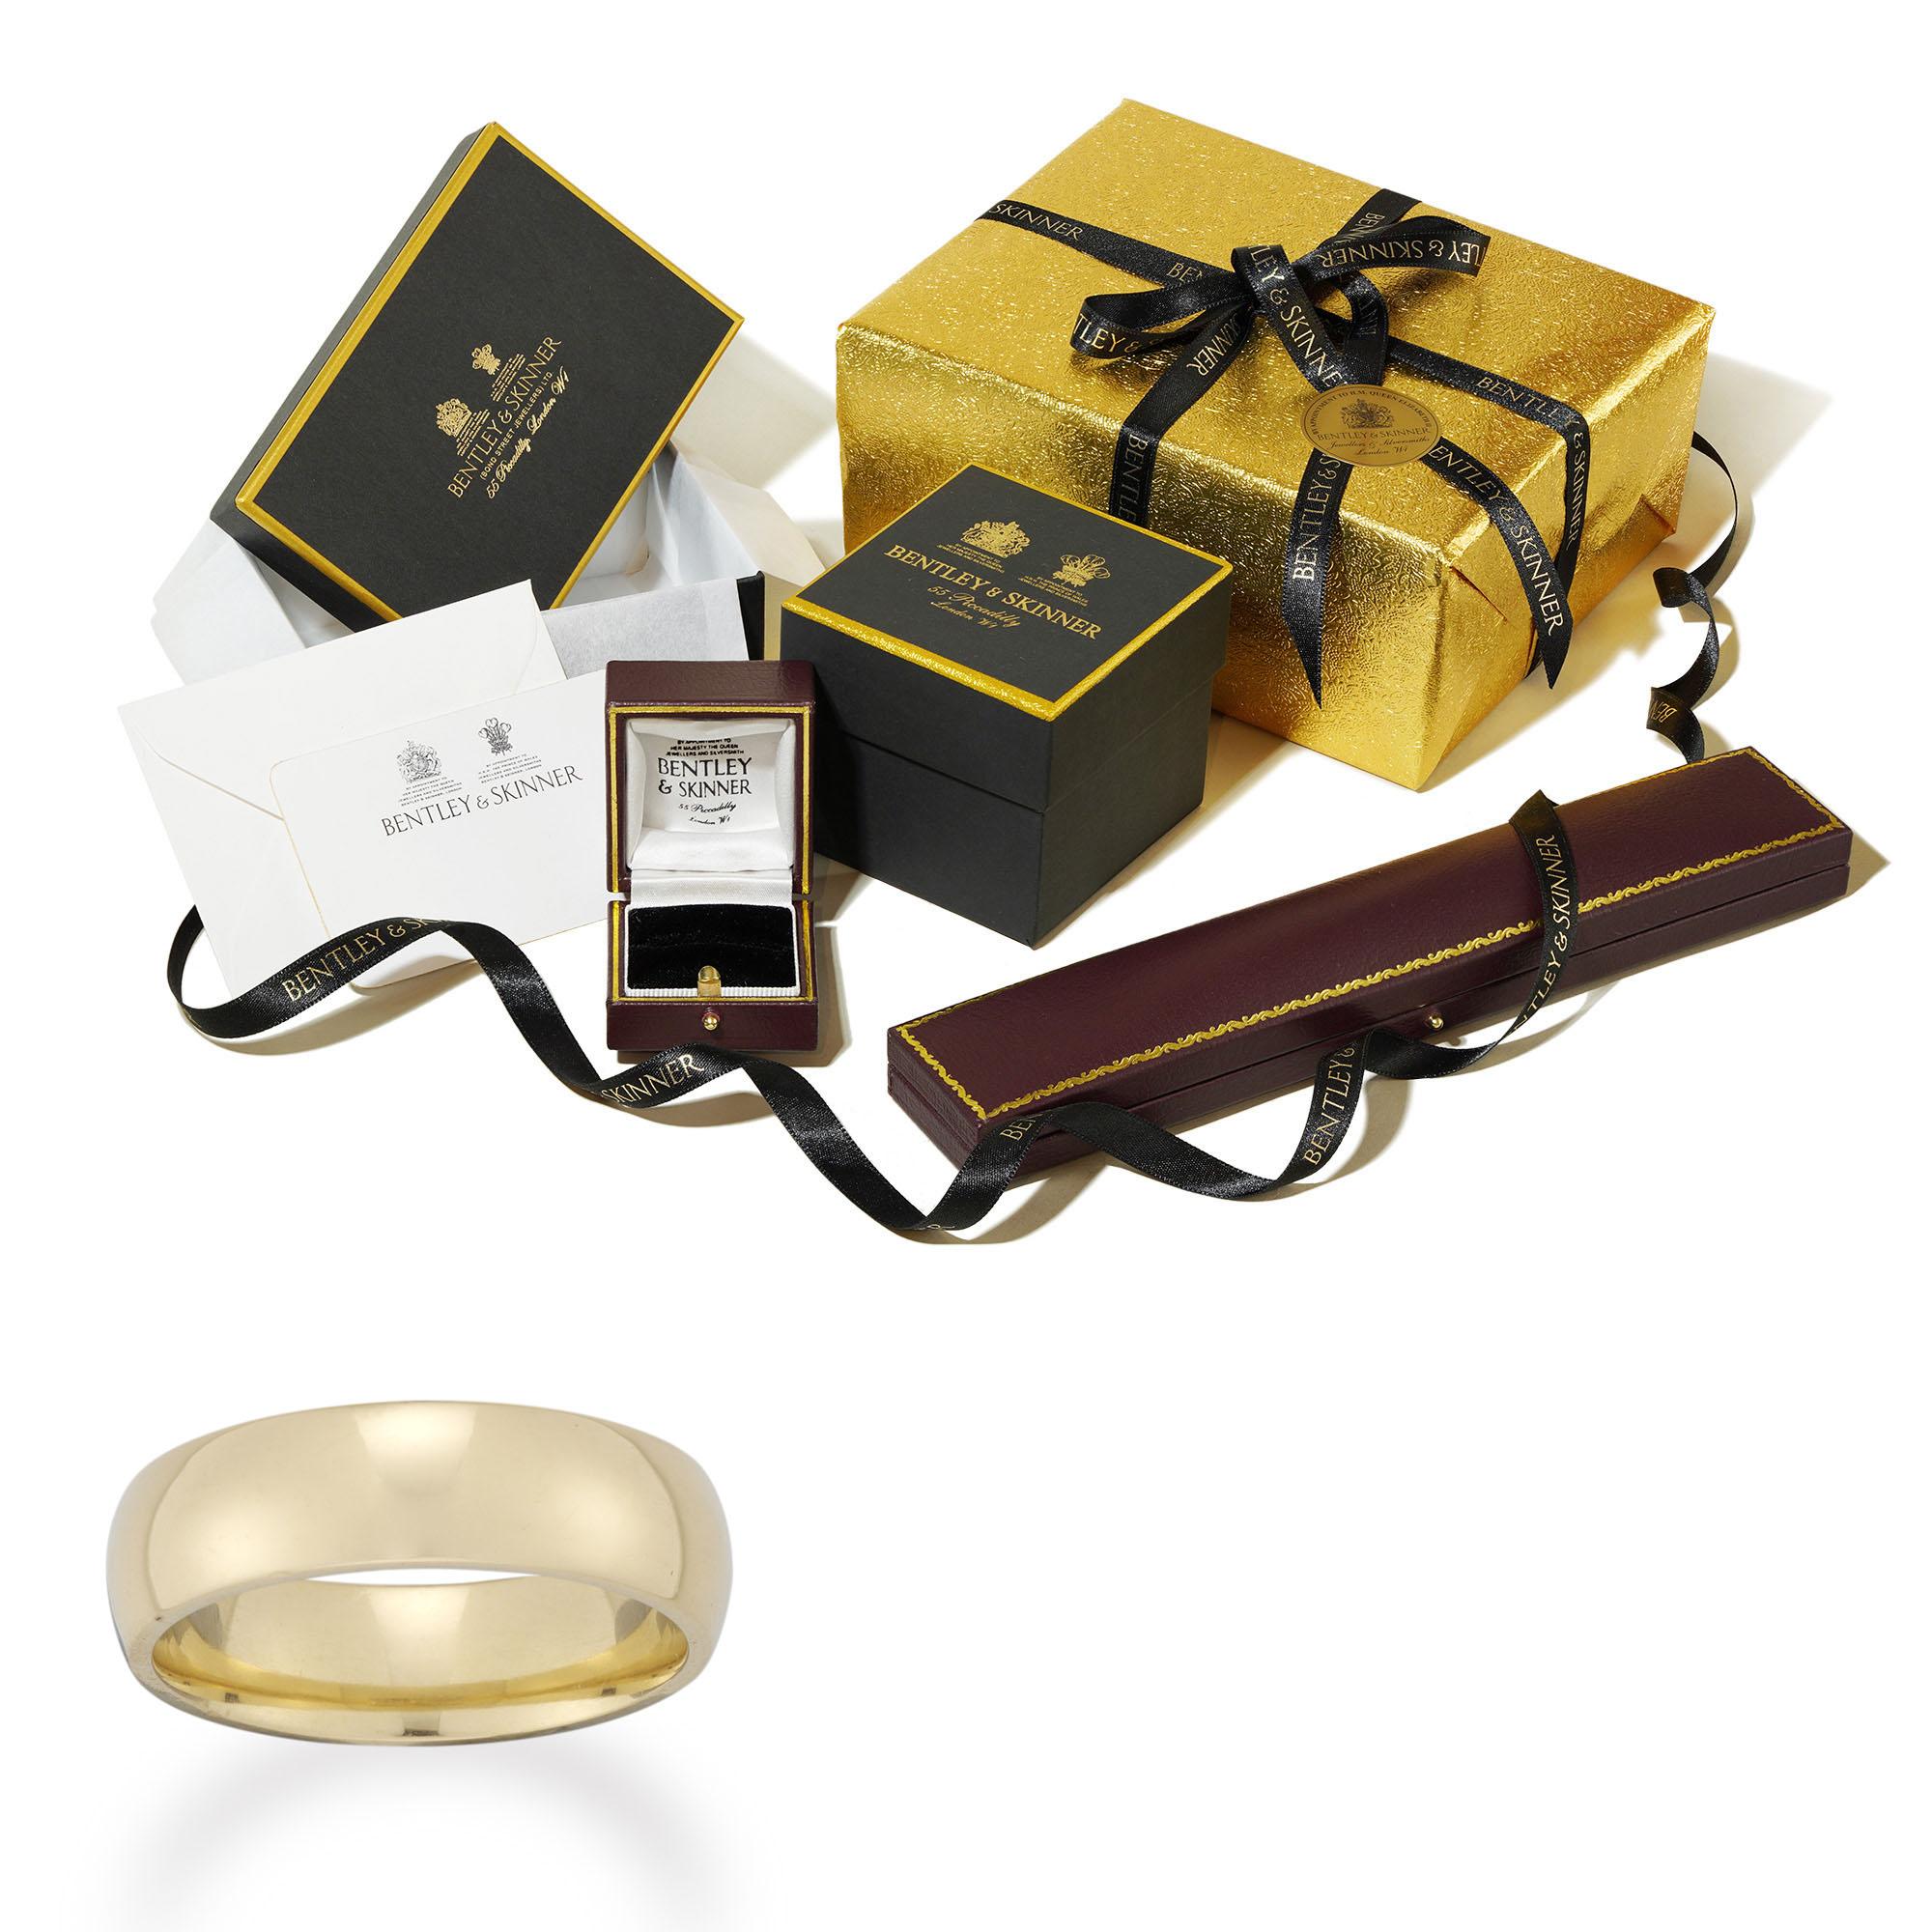 18ct gold wedding rings